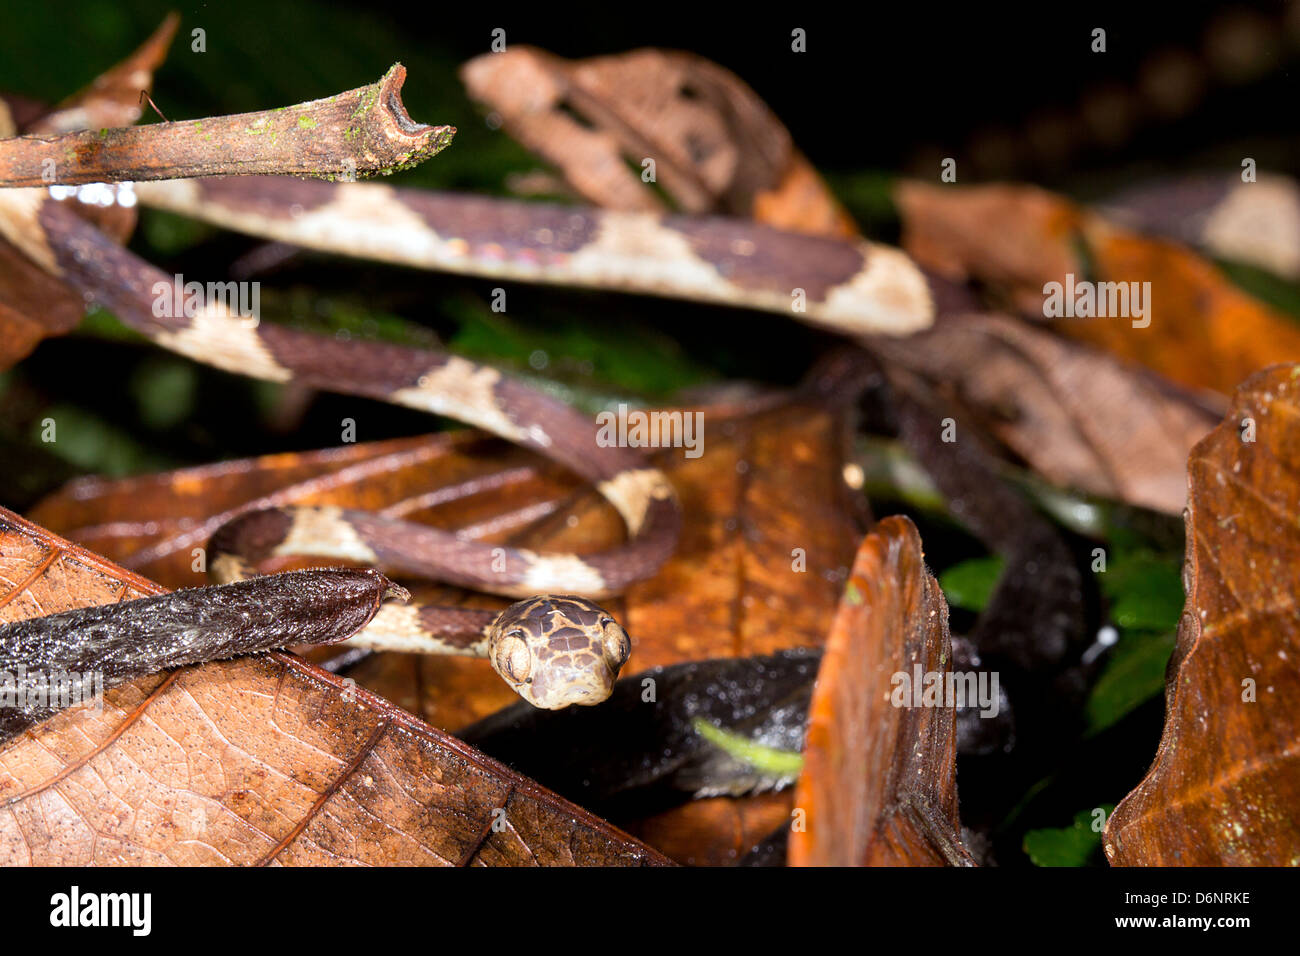 Blunt-testa di serpente ad albero (Imantodes cenchoa) strisciando attraverso la vegetazione di sottobosco, Ecuador Foto Stock